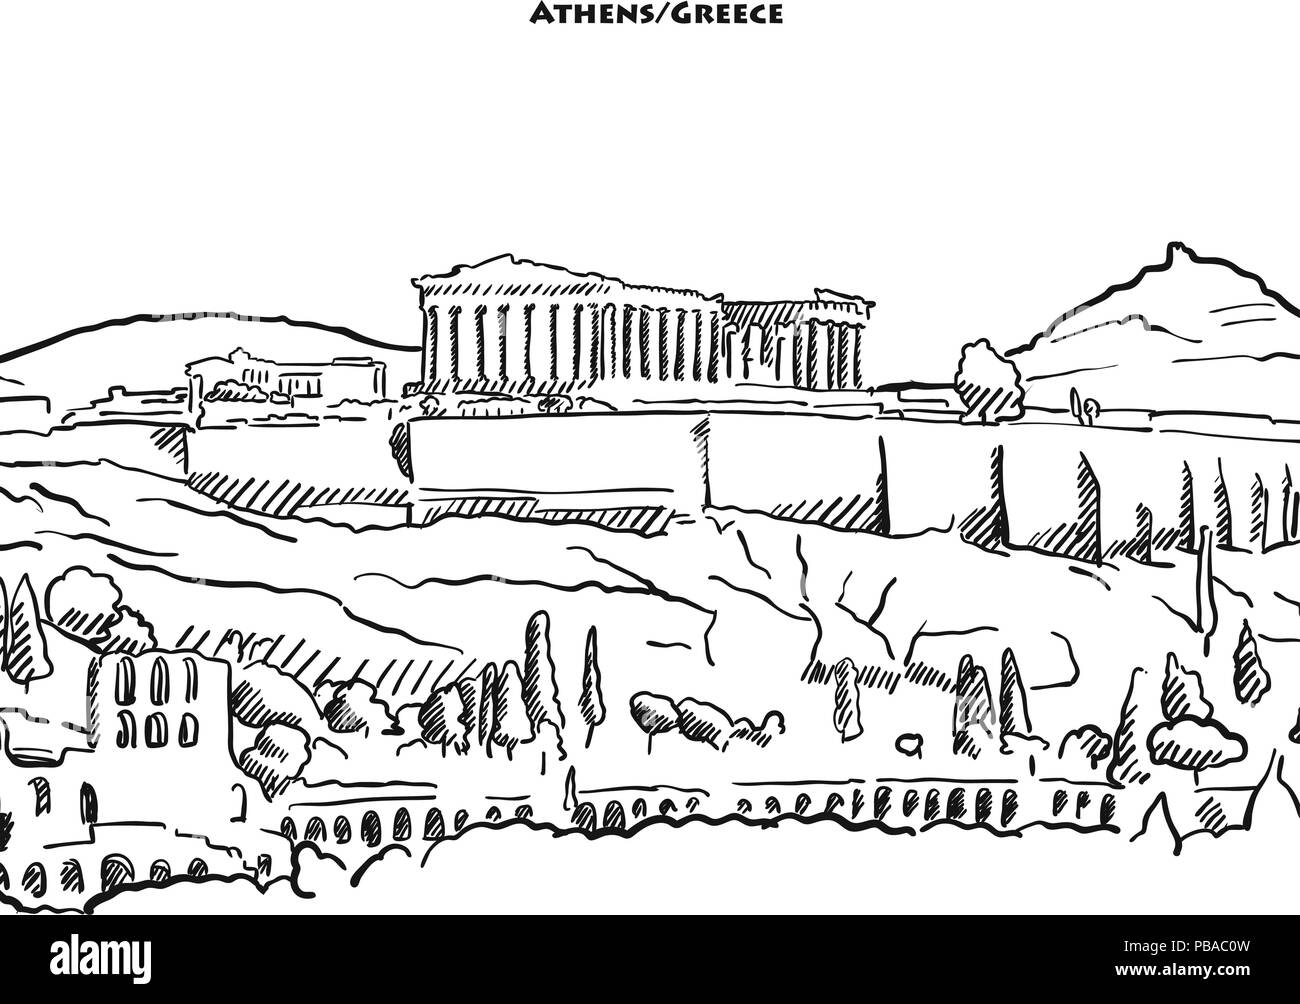 Disegno di Atene acroplolis. Disegnate a mano disegno vettoriale del famoso Partenone. Illustrazione Vettoriale